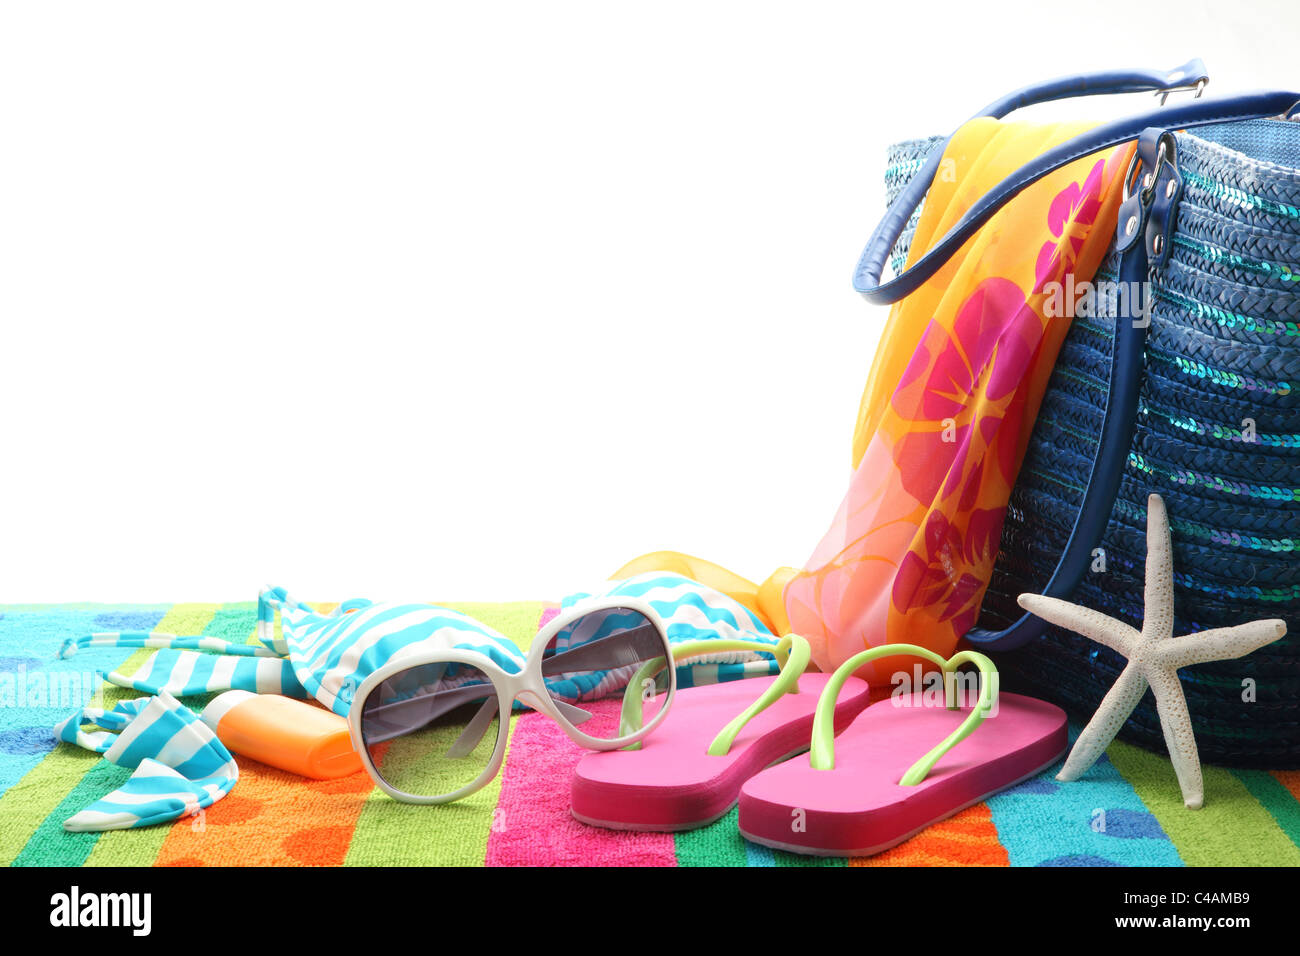 Accessori in spiaggia con costume da bagno,occhiali da sole,scialle e flip flop su sfondo bianco. Foto Stock